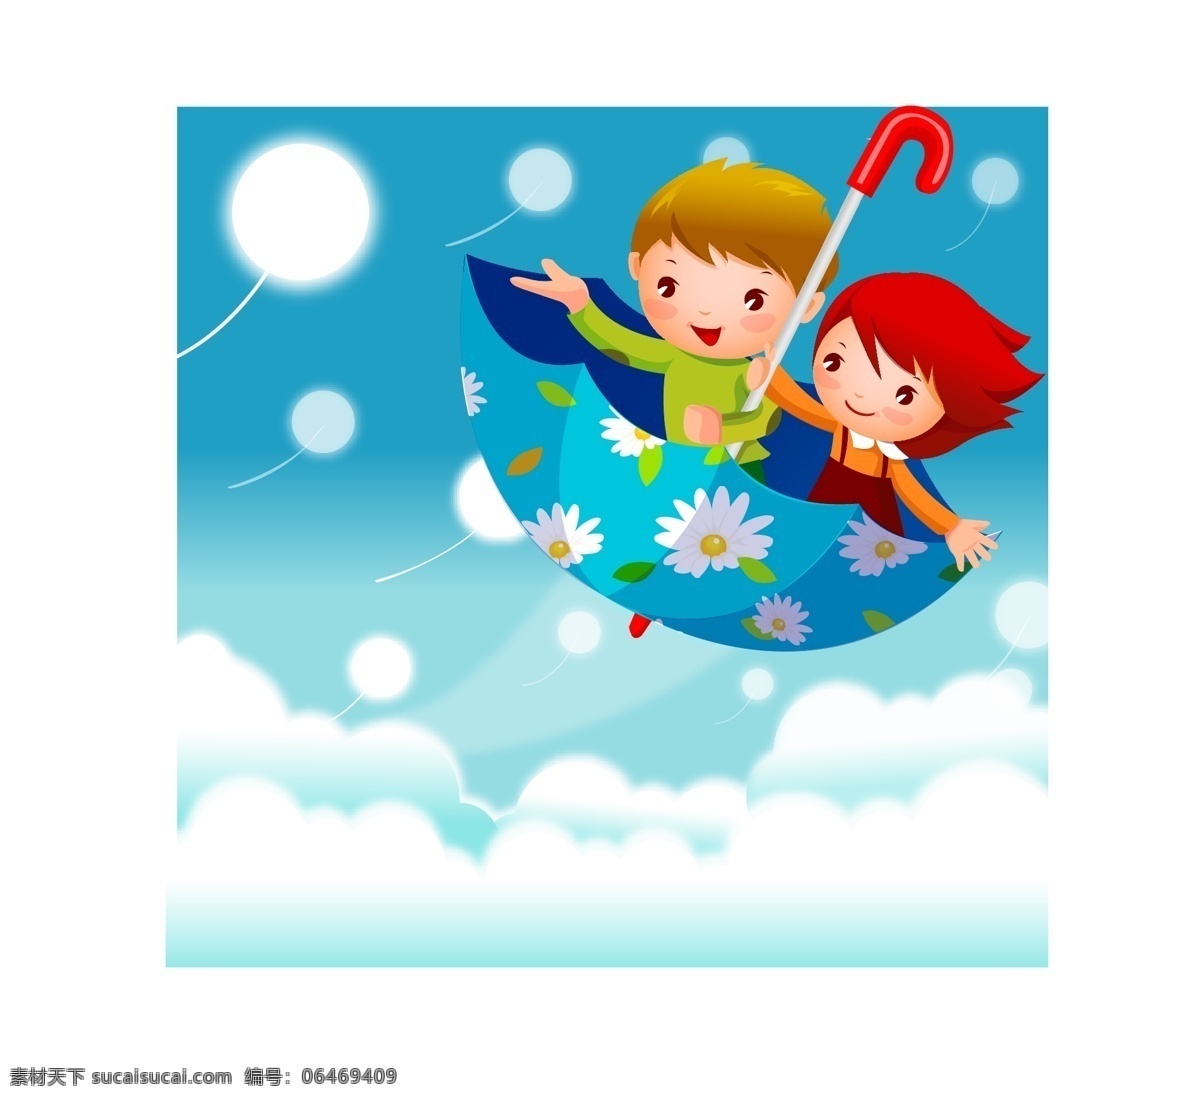 花 伞 小船 插画 飞船 天空 童话 花雨伞 矢量图 矢量人物